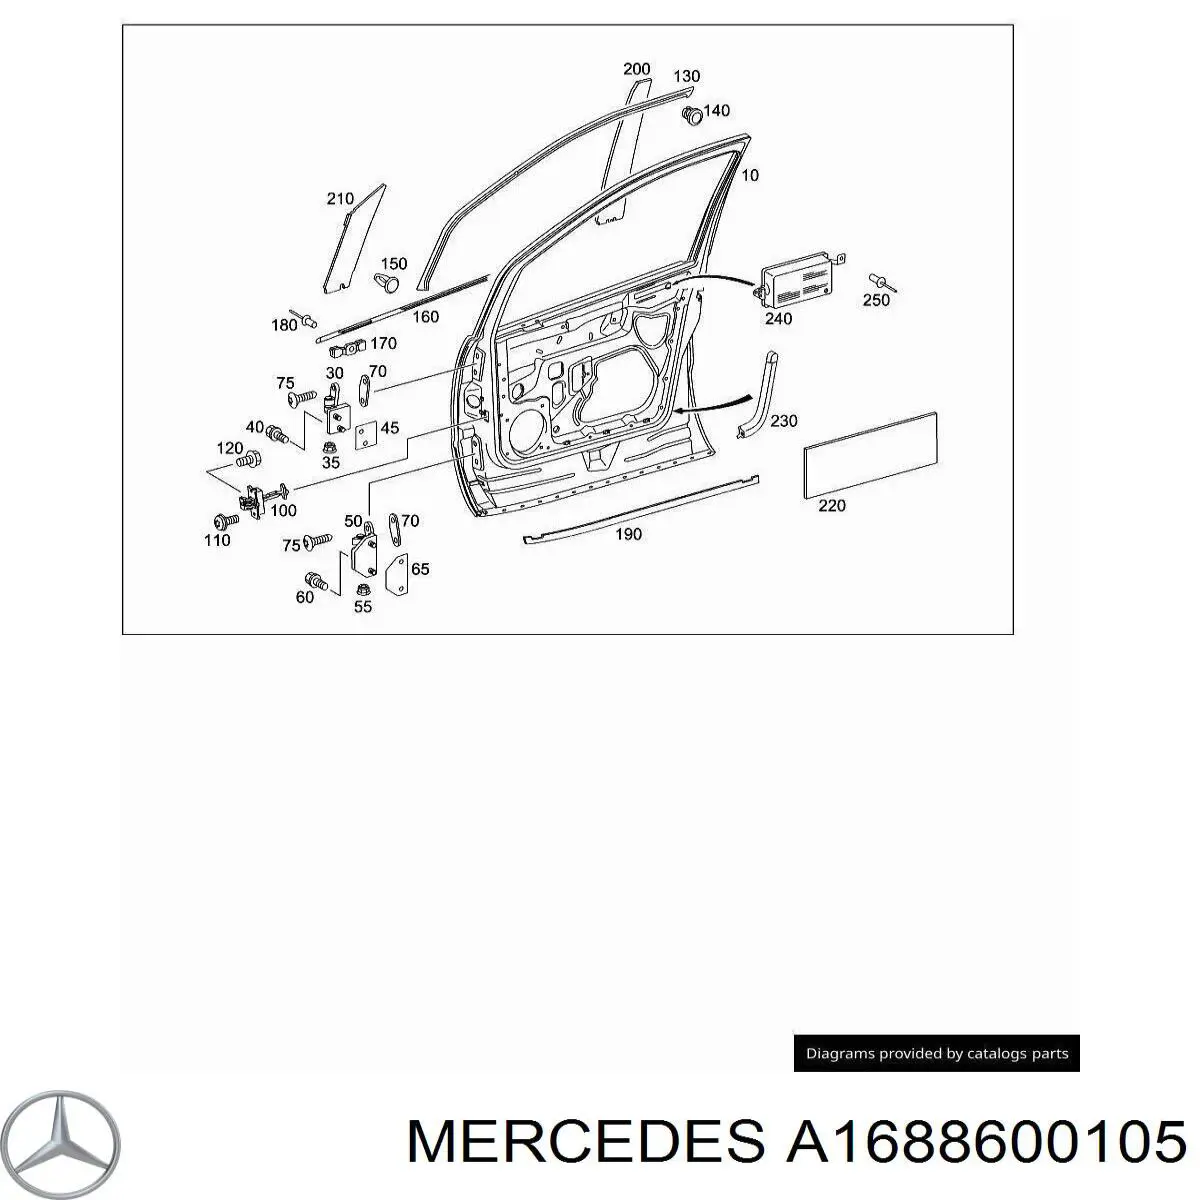 1688600105 Mercedes airbag de la puerta delantera izquierda